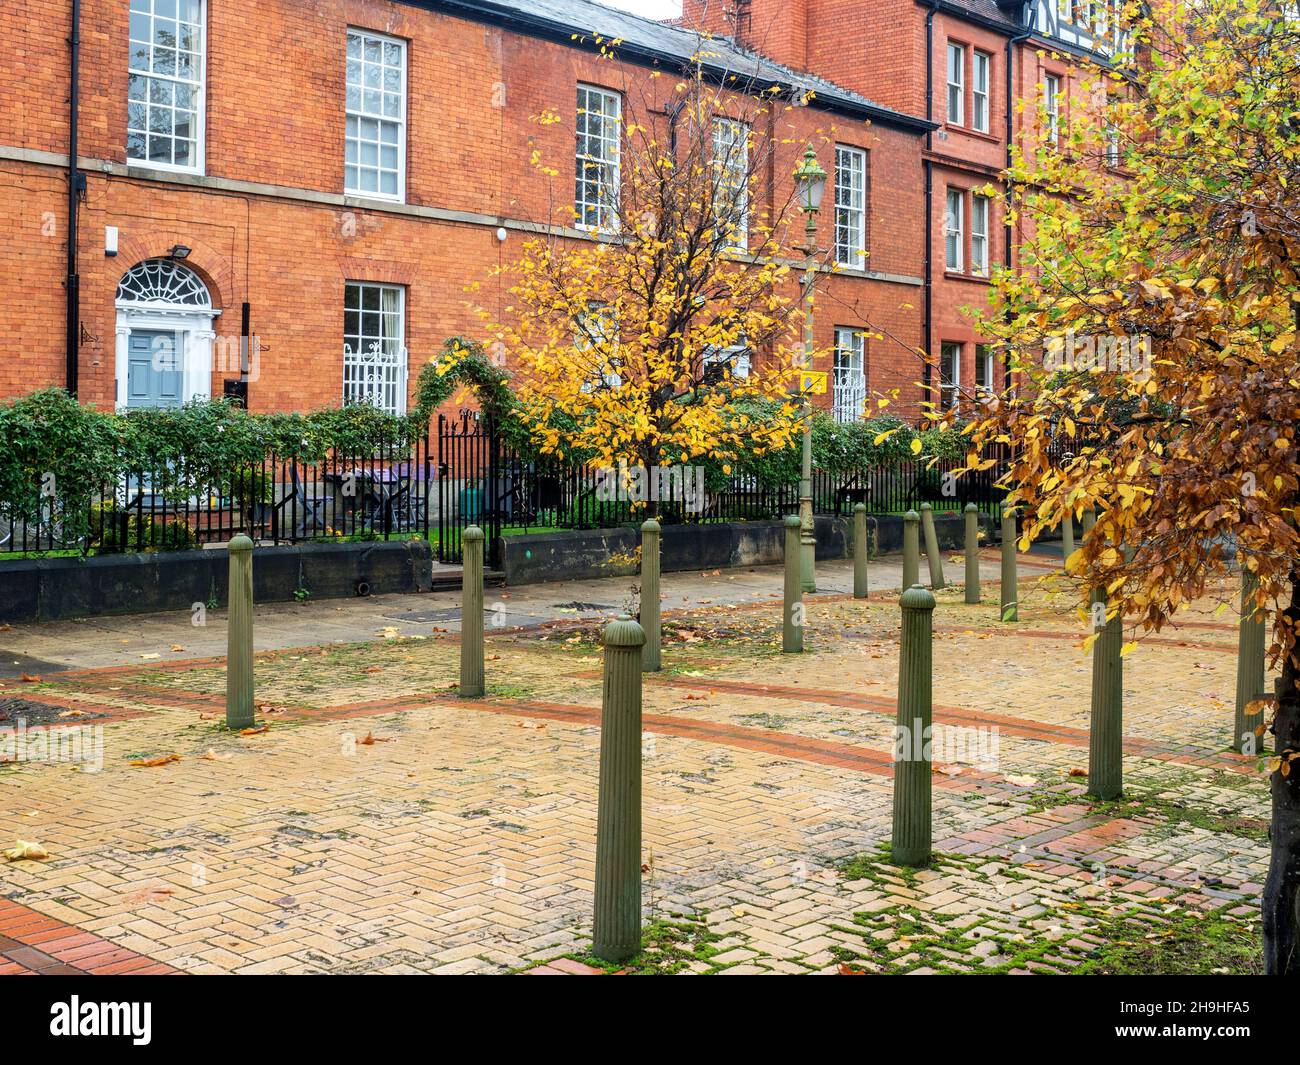 Terrazza di primi 19th secolo case di mattoni rossi in Acton Square City di Salford Greater Manchester Inghilterra Foto Stock